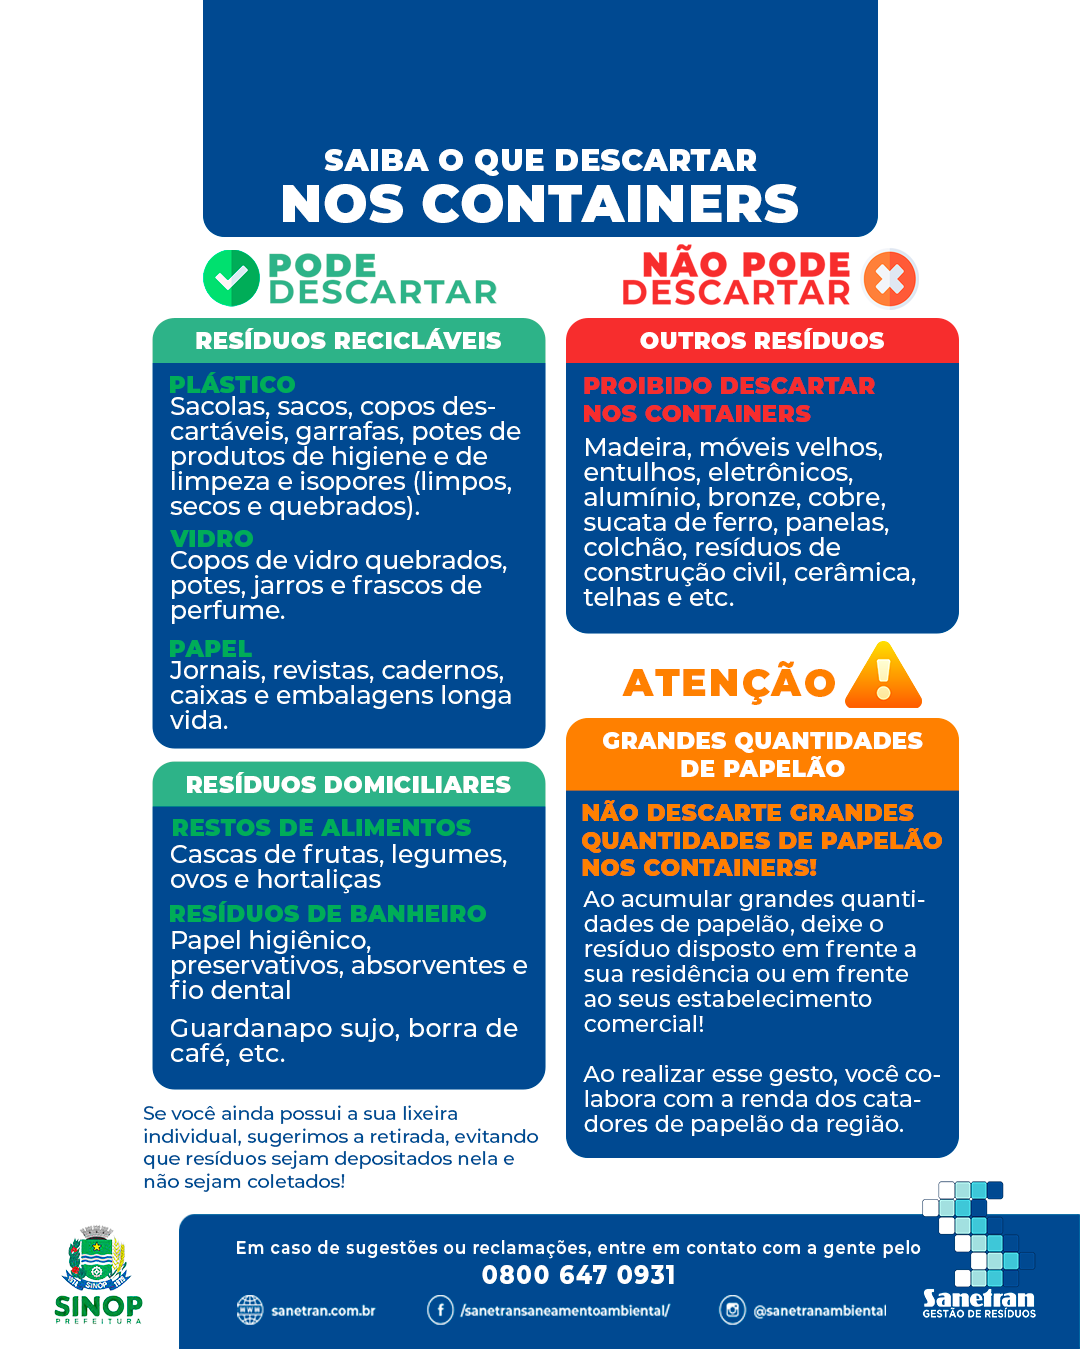 SINOP: Prefeitura orienta sobre tipos de resíduos descartados em Contêineres 4